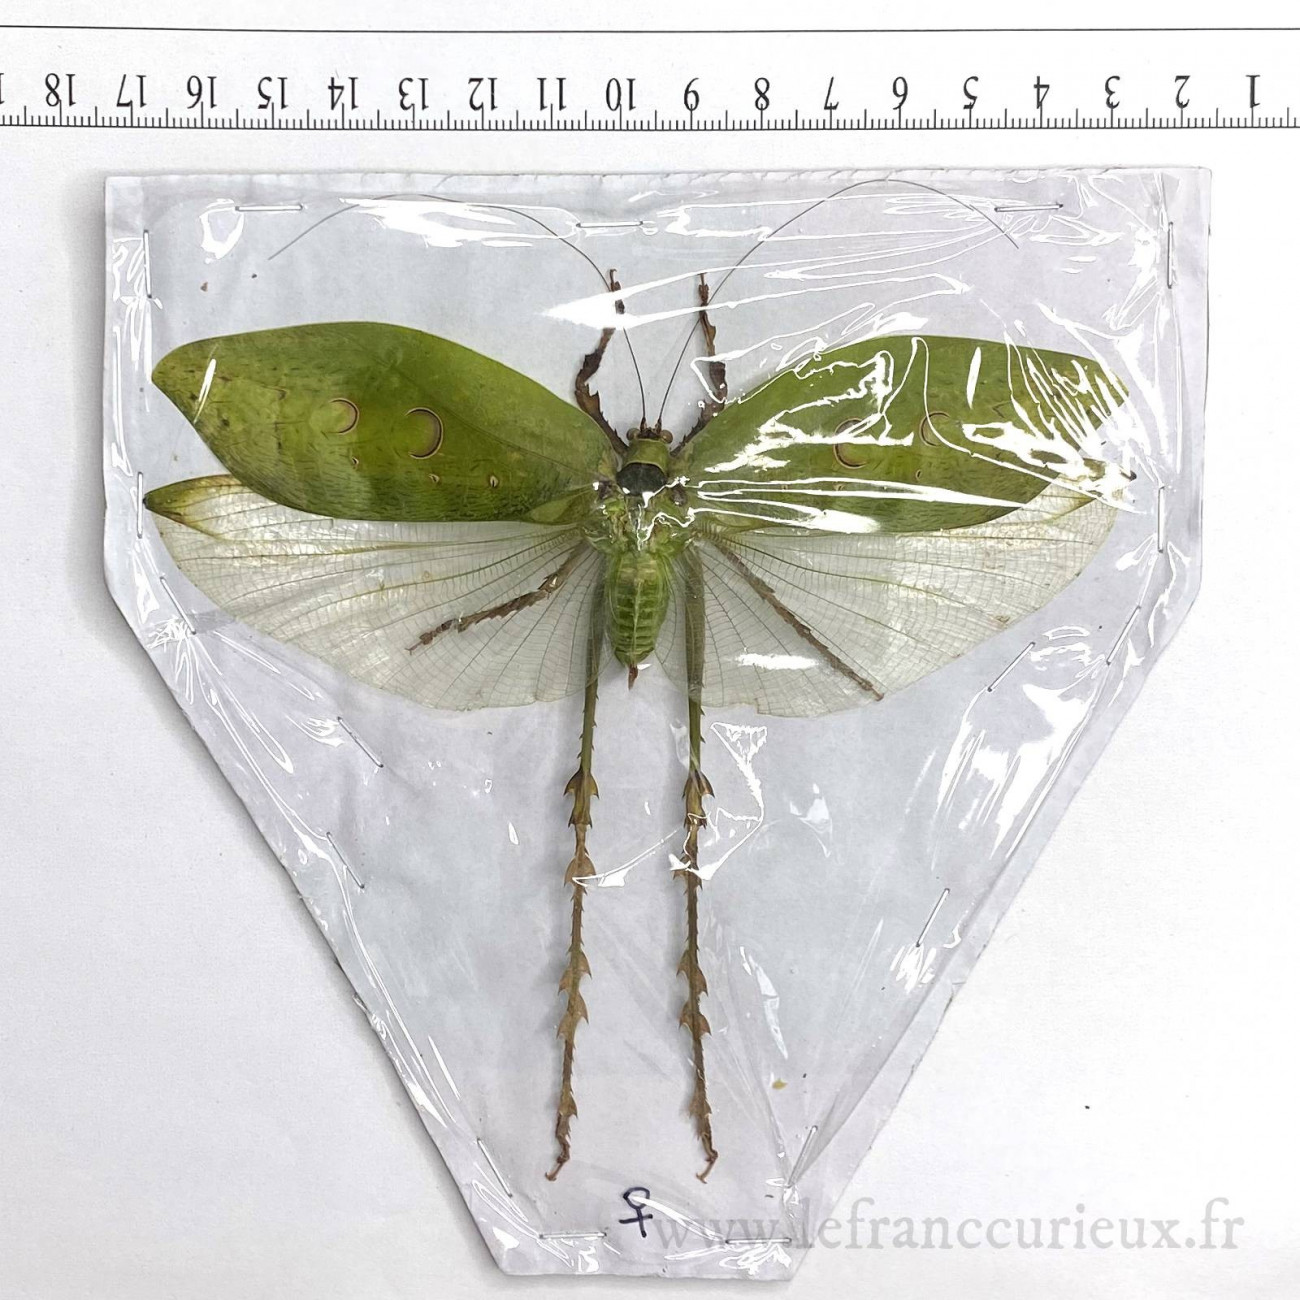 Entomologie Insecte Collection Aularches punctatus femelle A1 d'Indonesie! 